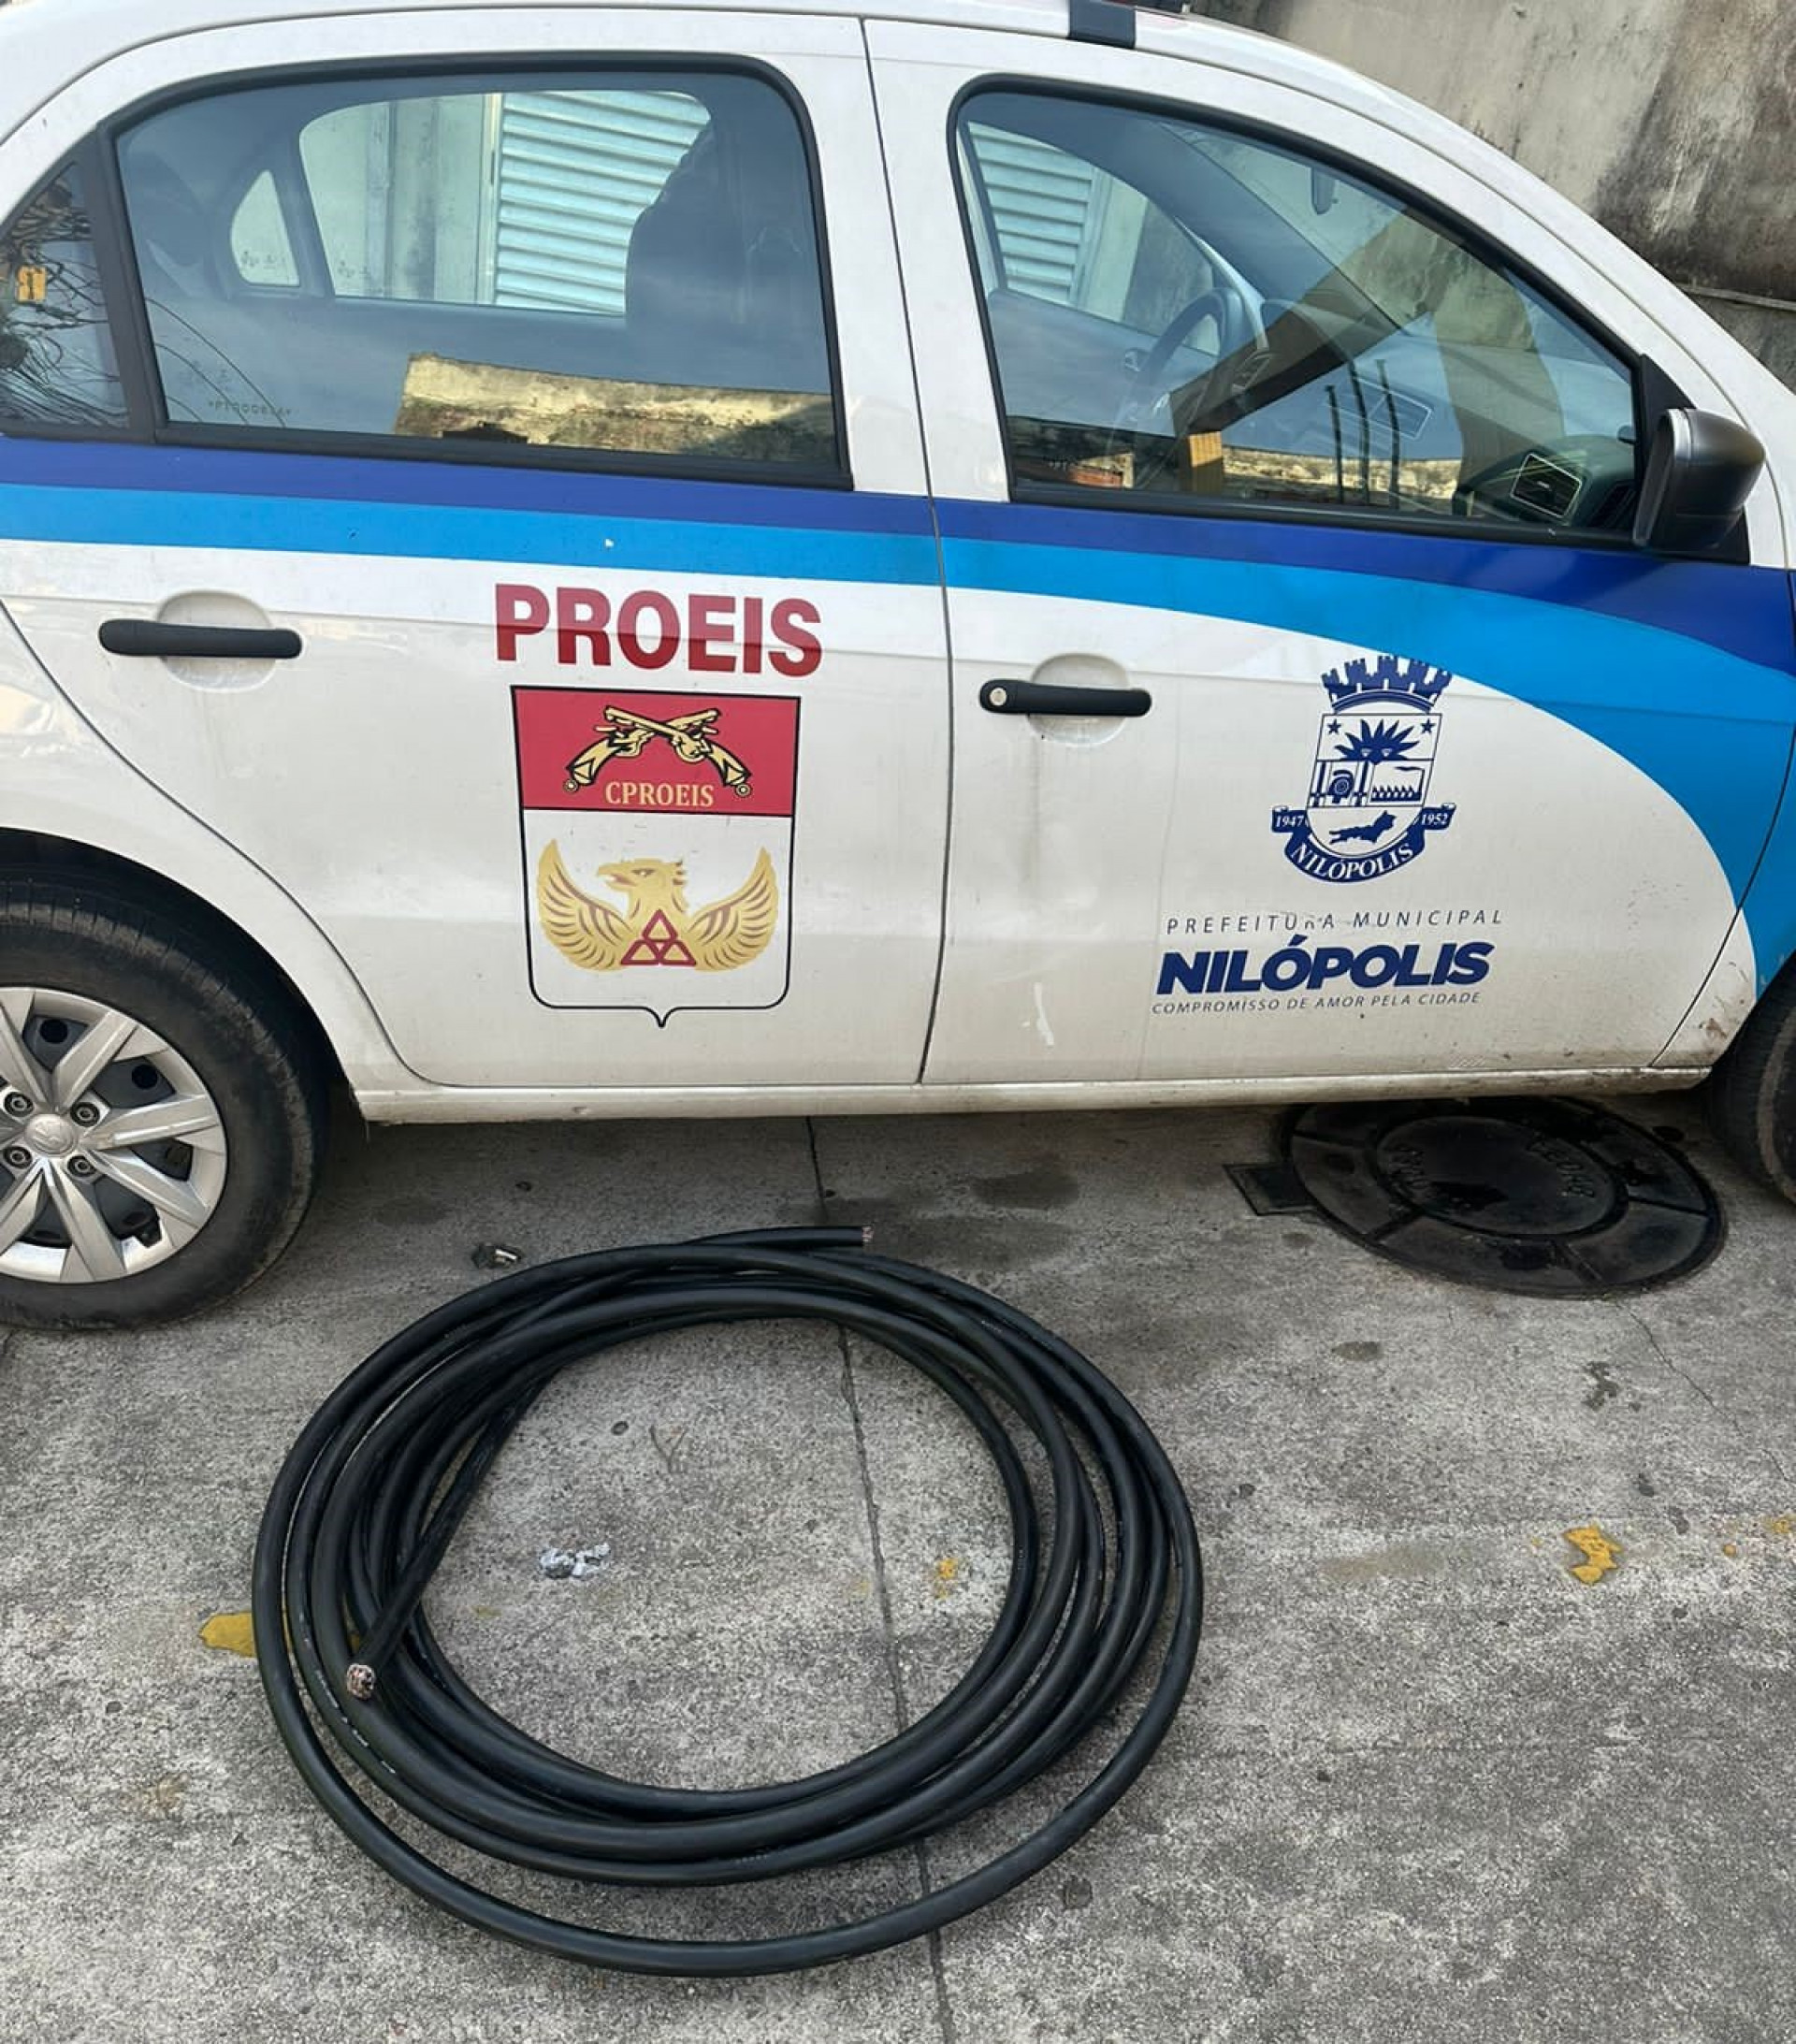 Os cabos roubados apreendidos pelos policiais militares do Proeis Nilópolis - Divulgação